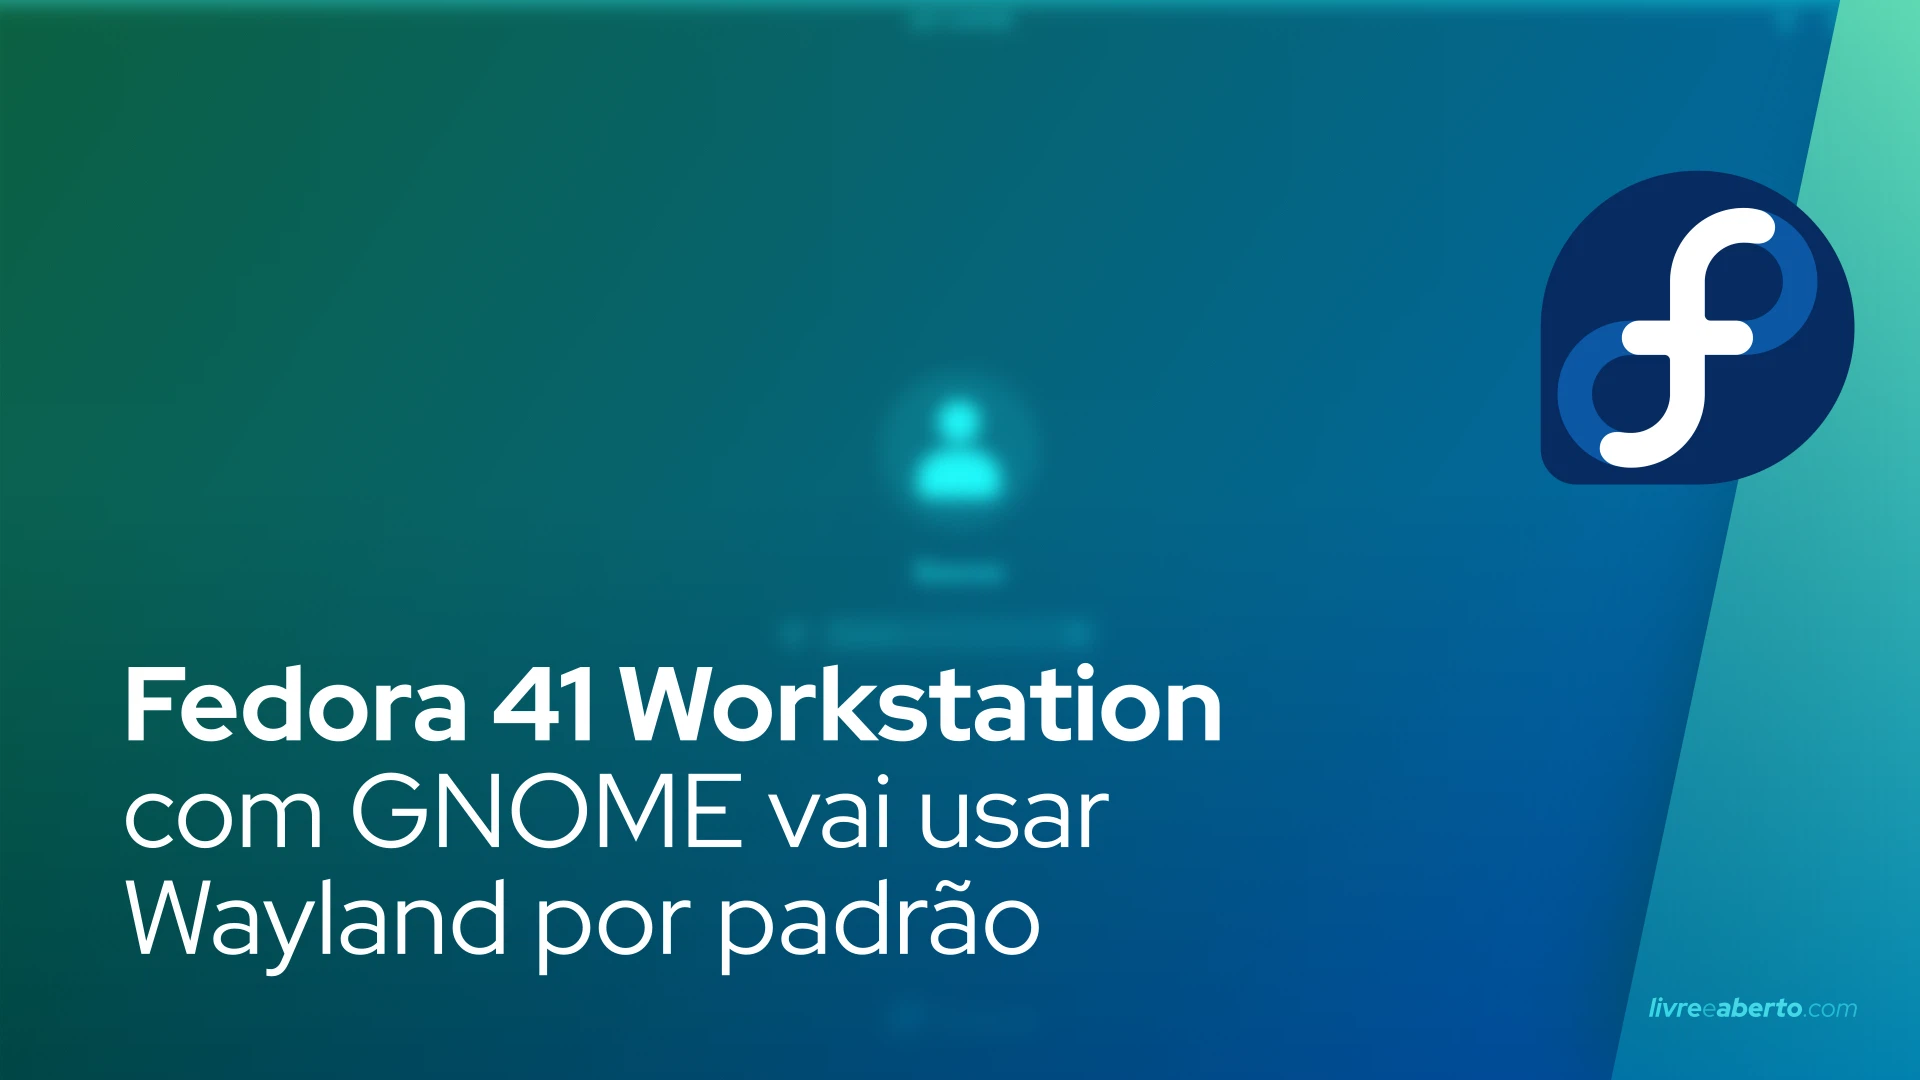 Fedora 41 Workstation com GNOME vai usar Wayland por padrão